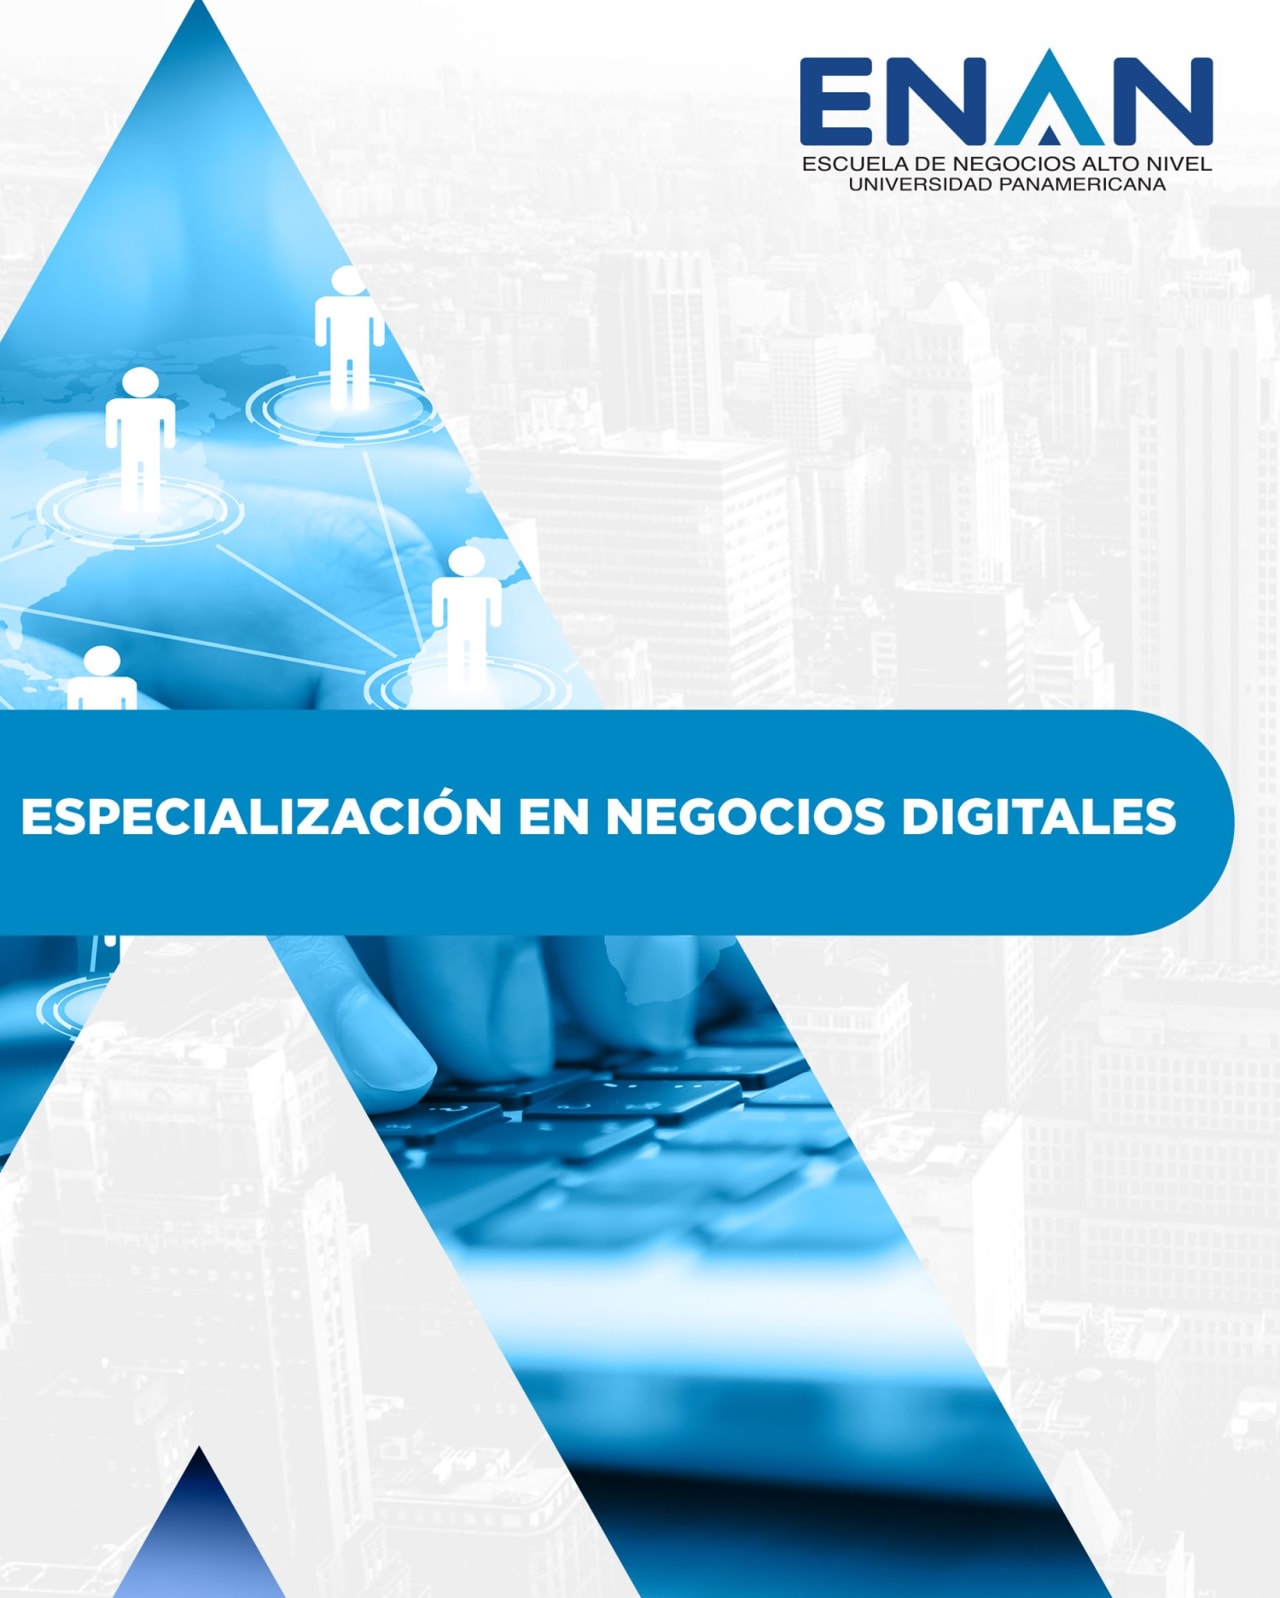 Escuela de Negocios Alto Nivel - Universidad Panamericana de Guatemala Digital Business Specialization